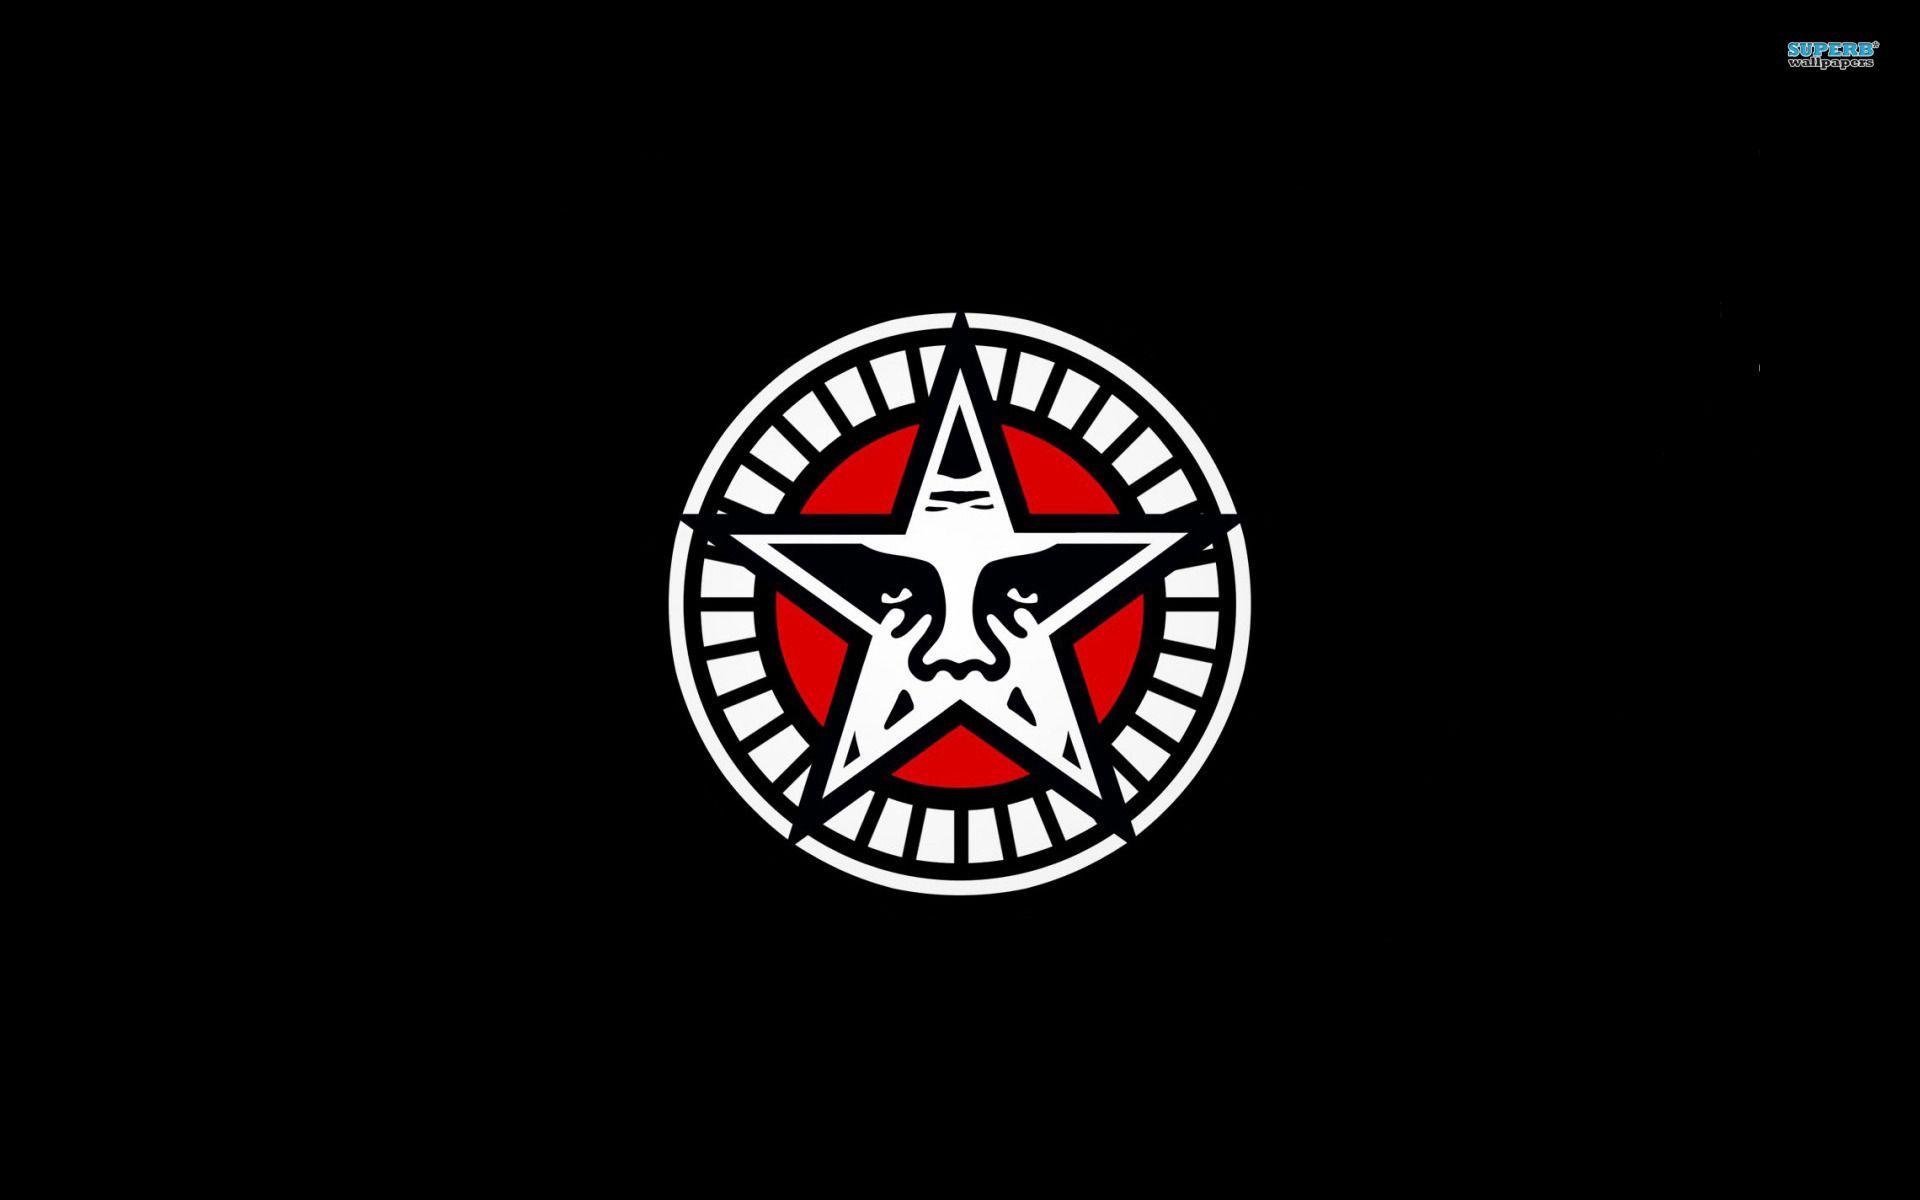 black obey logo